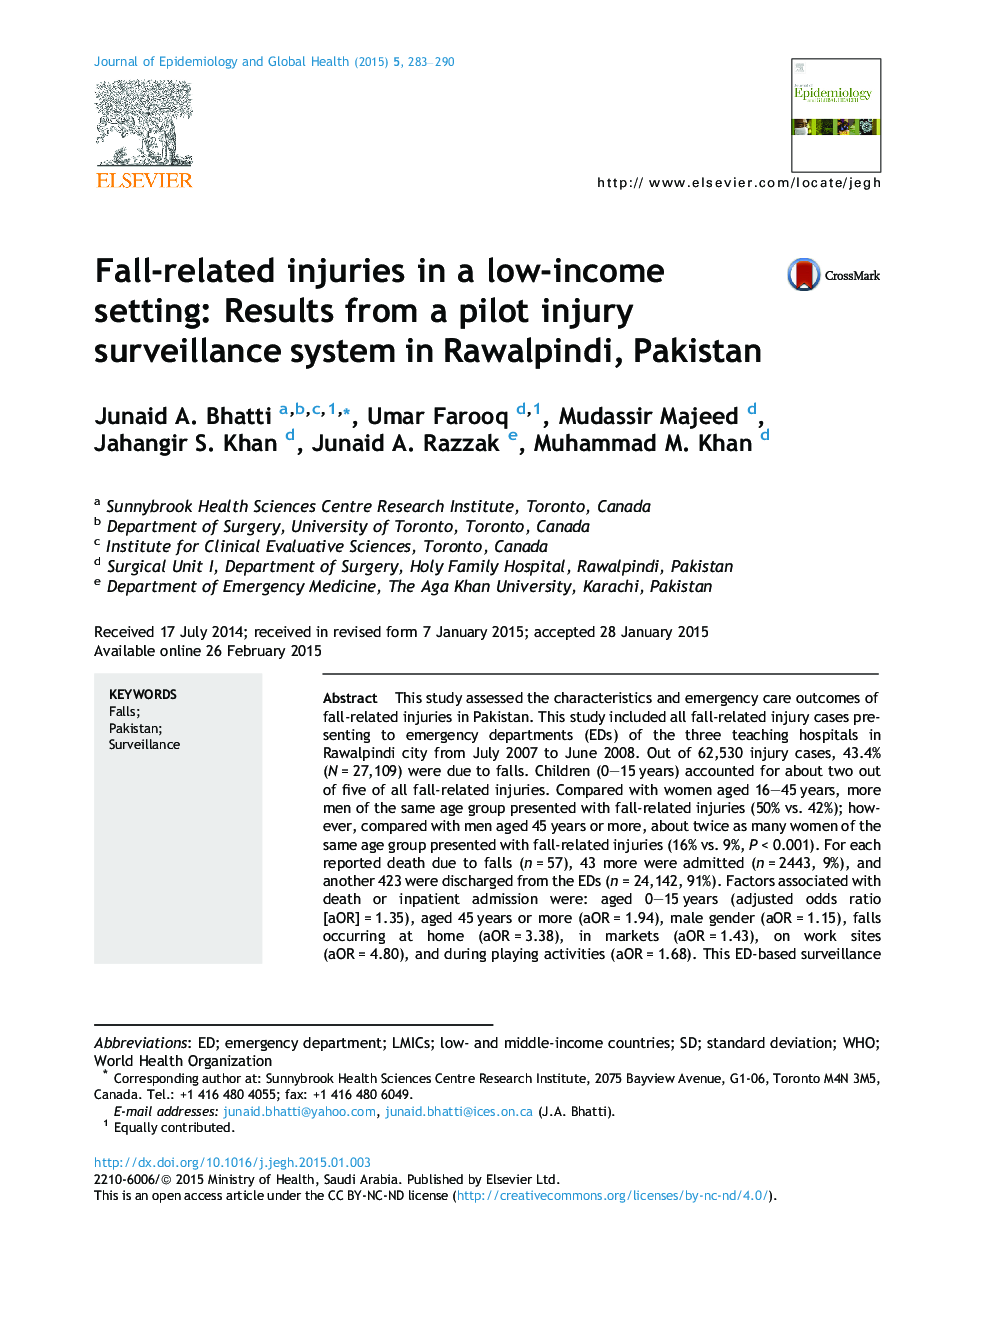 آسیب های مرتبط با پاییز در یک محیط کم درآمد: نتایج یک سیستم نظارت بر خسارت زخمی در راولپندی، پاکستان 